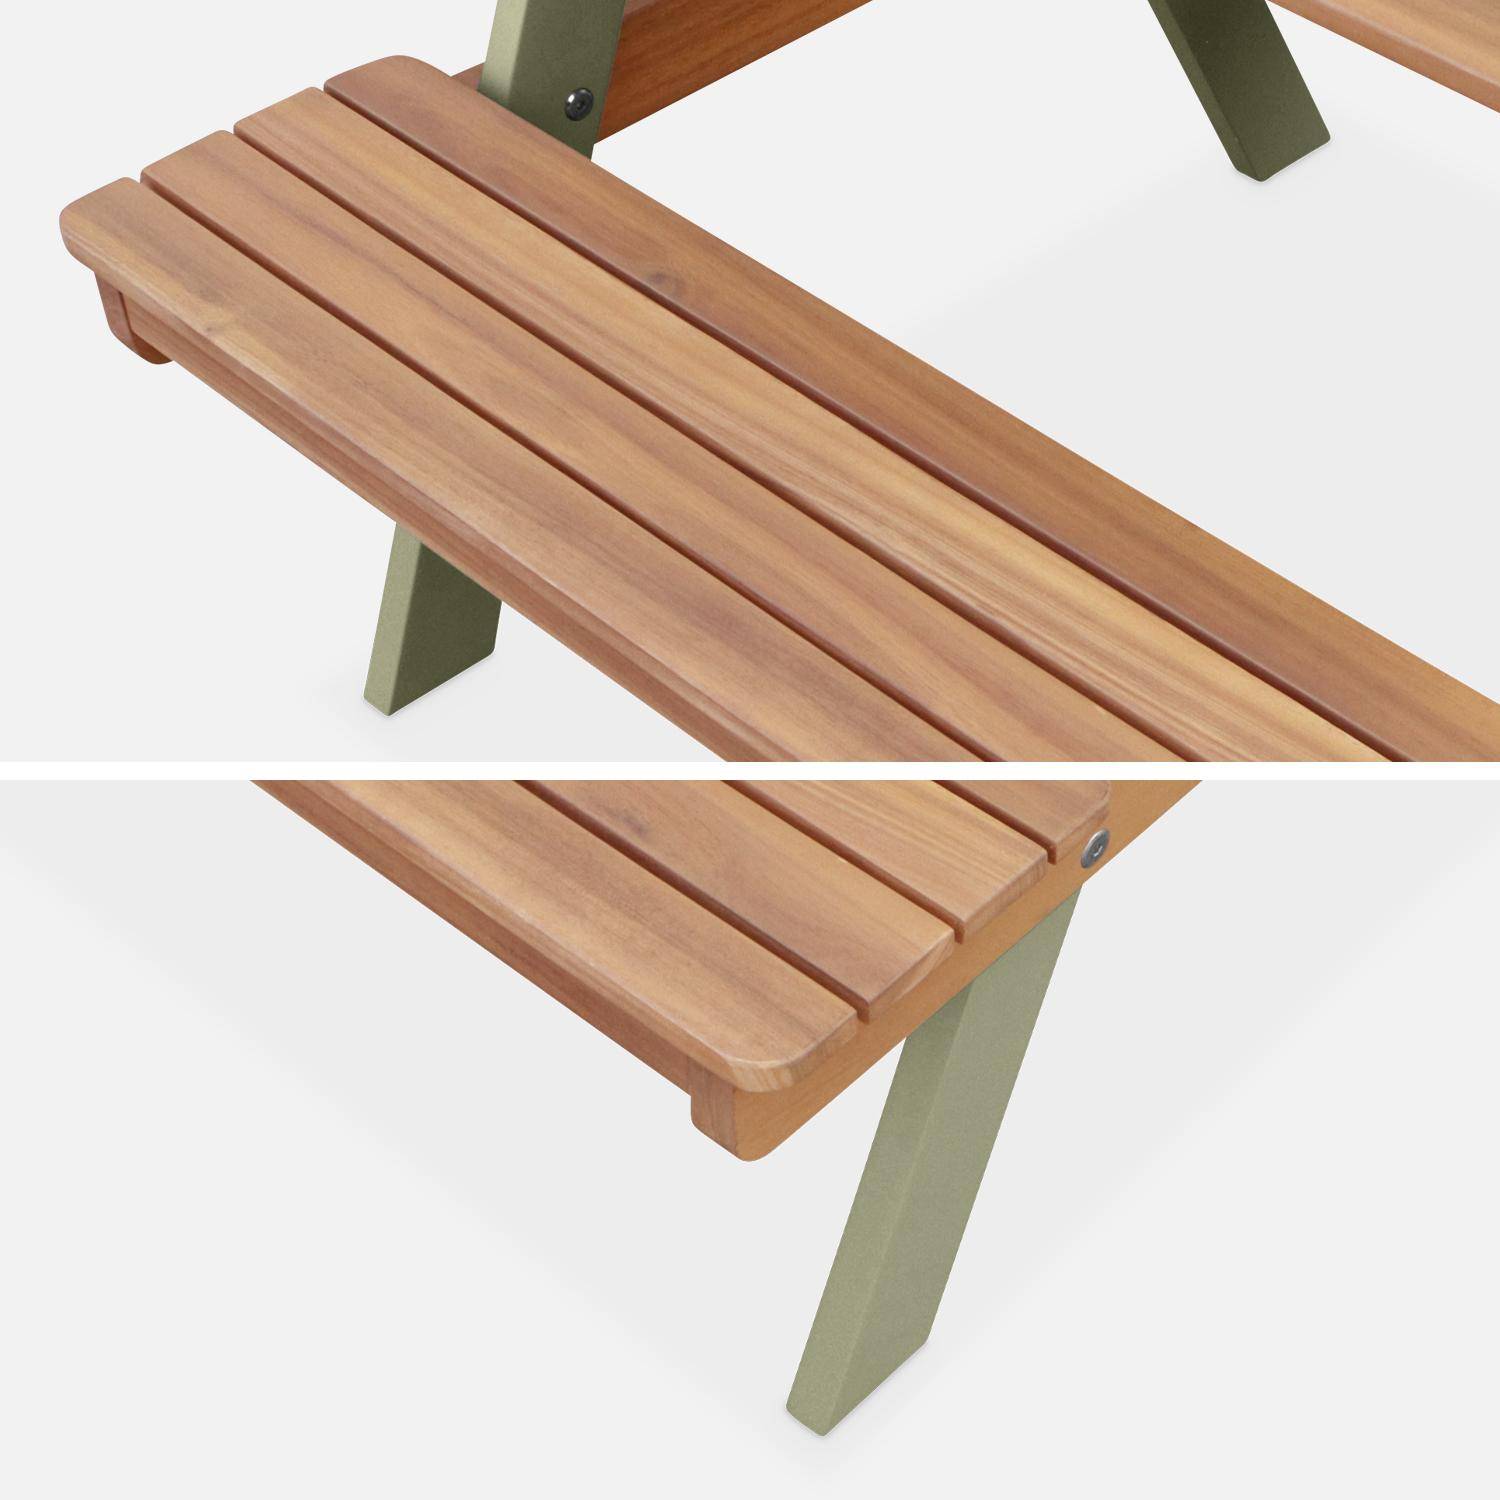 Mesa de picnic de madera de acacia para niños, 2 plazas, color teca claro y verde grisáceo Photo5